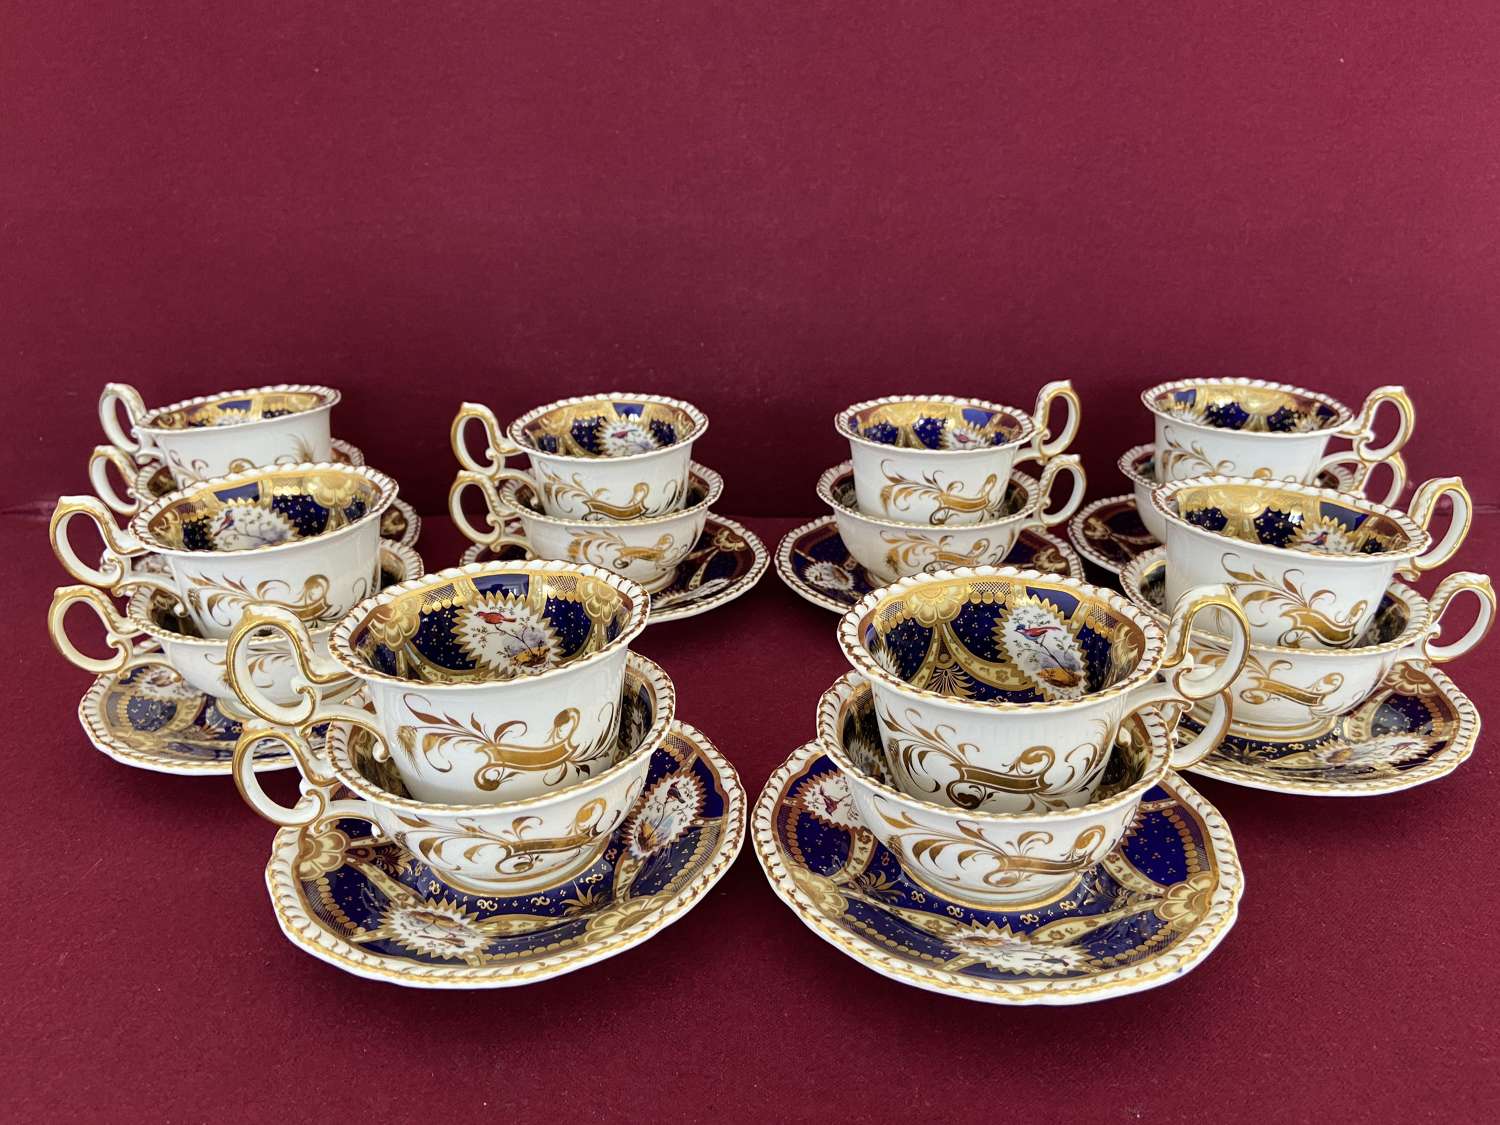 8 trios from a H & R Daniel tea service c.1826